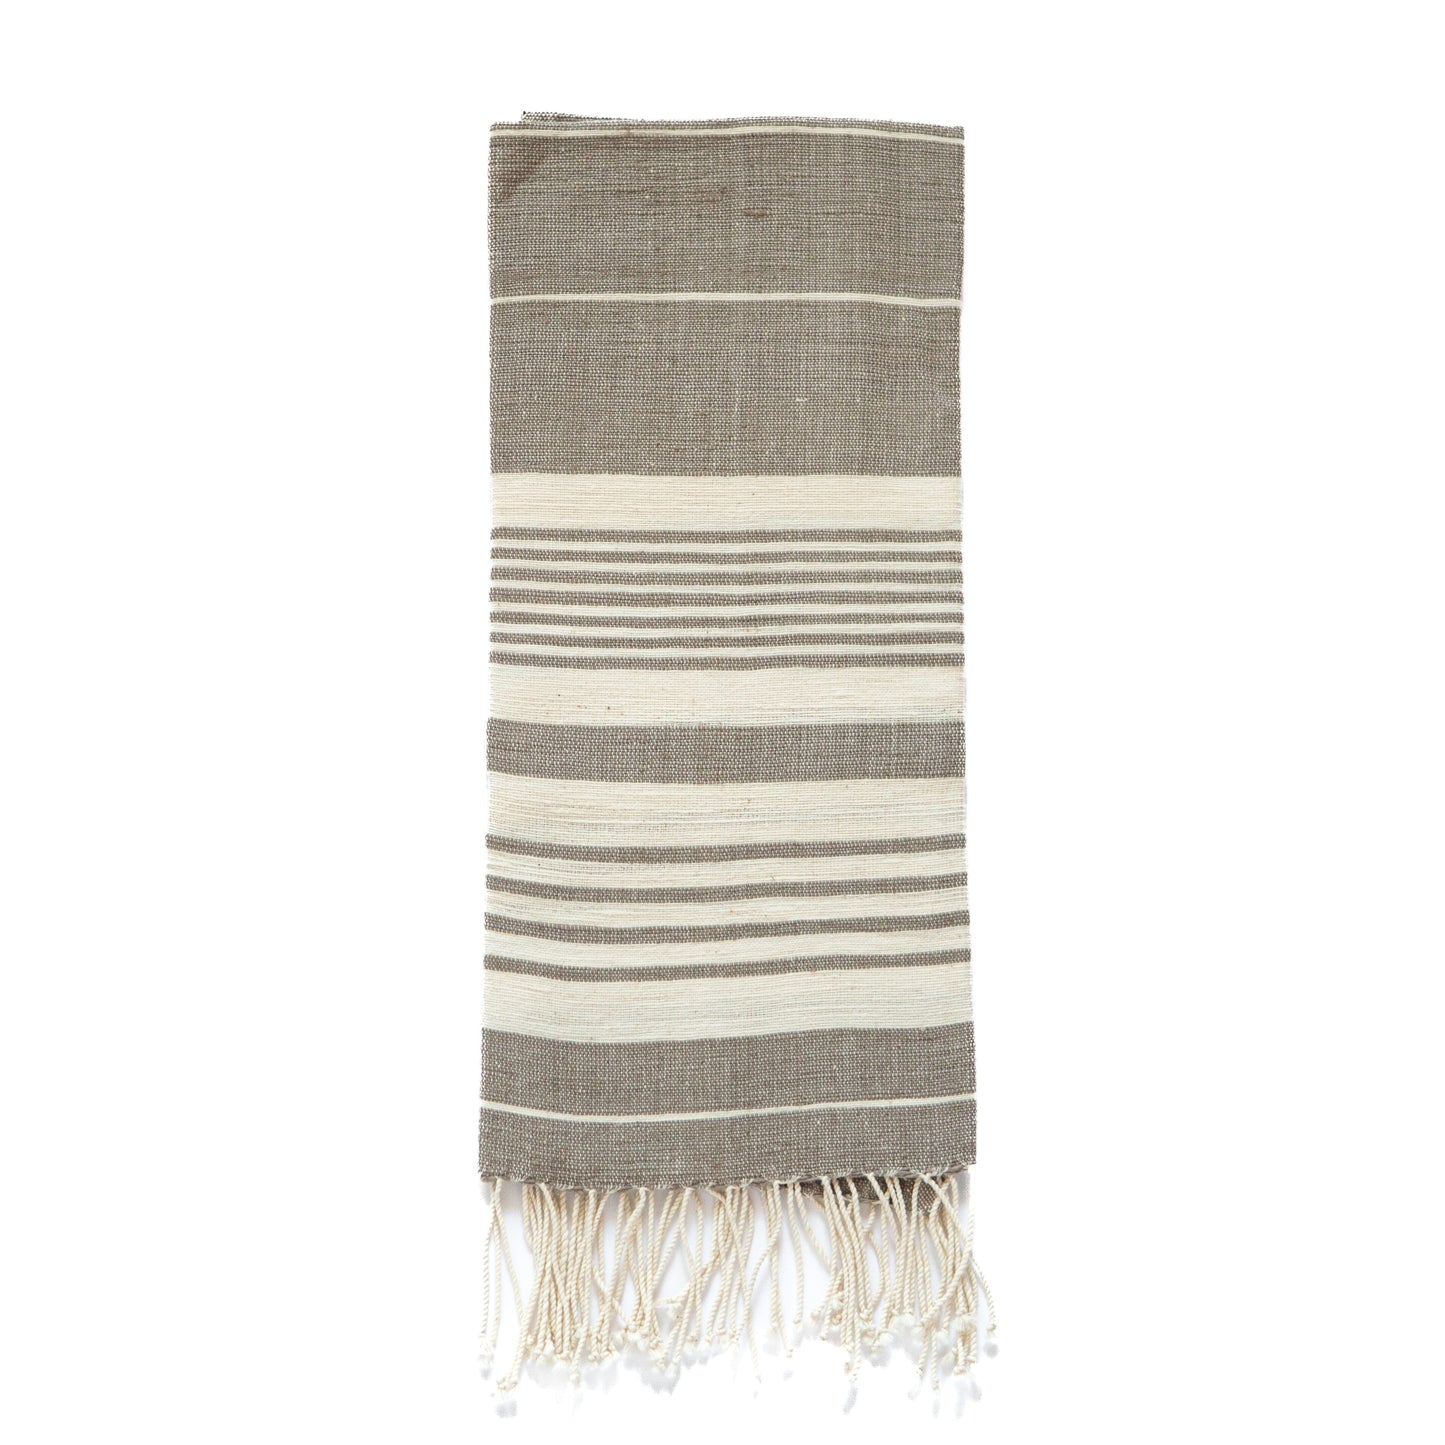 Dawa handwoven cotton towel towel sabahar Grey 